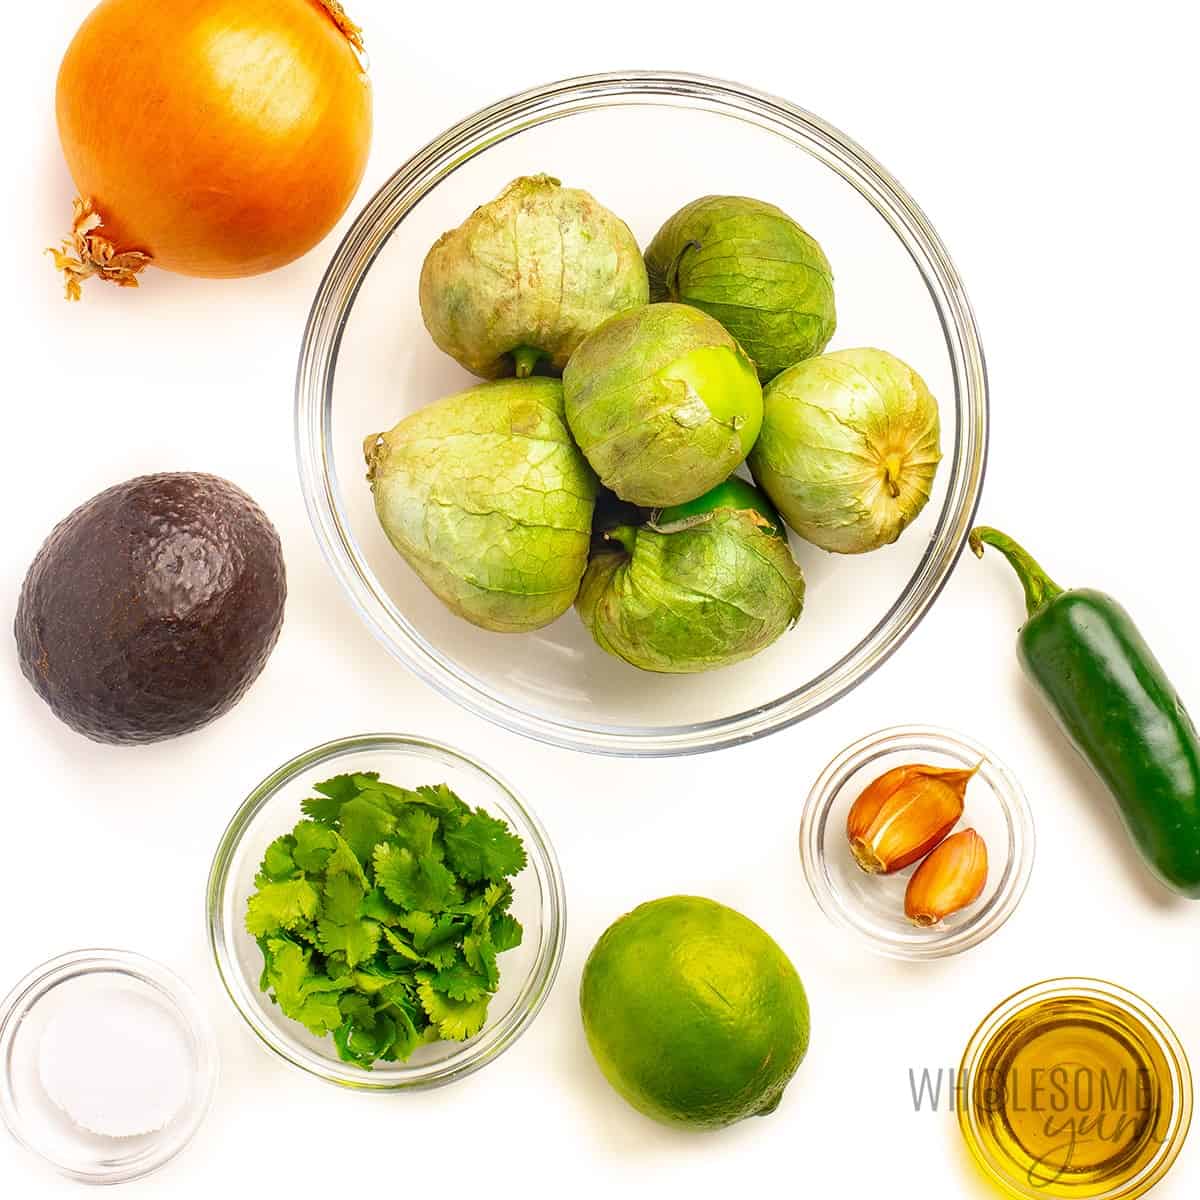 Avocado salsa verde ingredients in bowls.